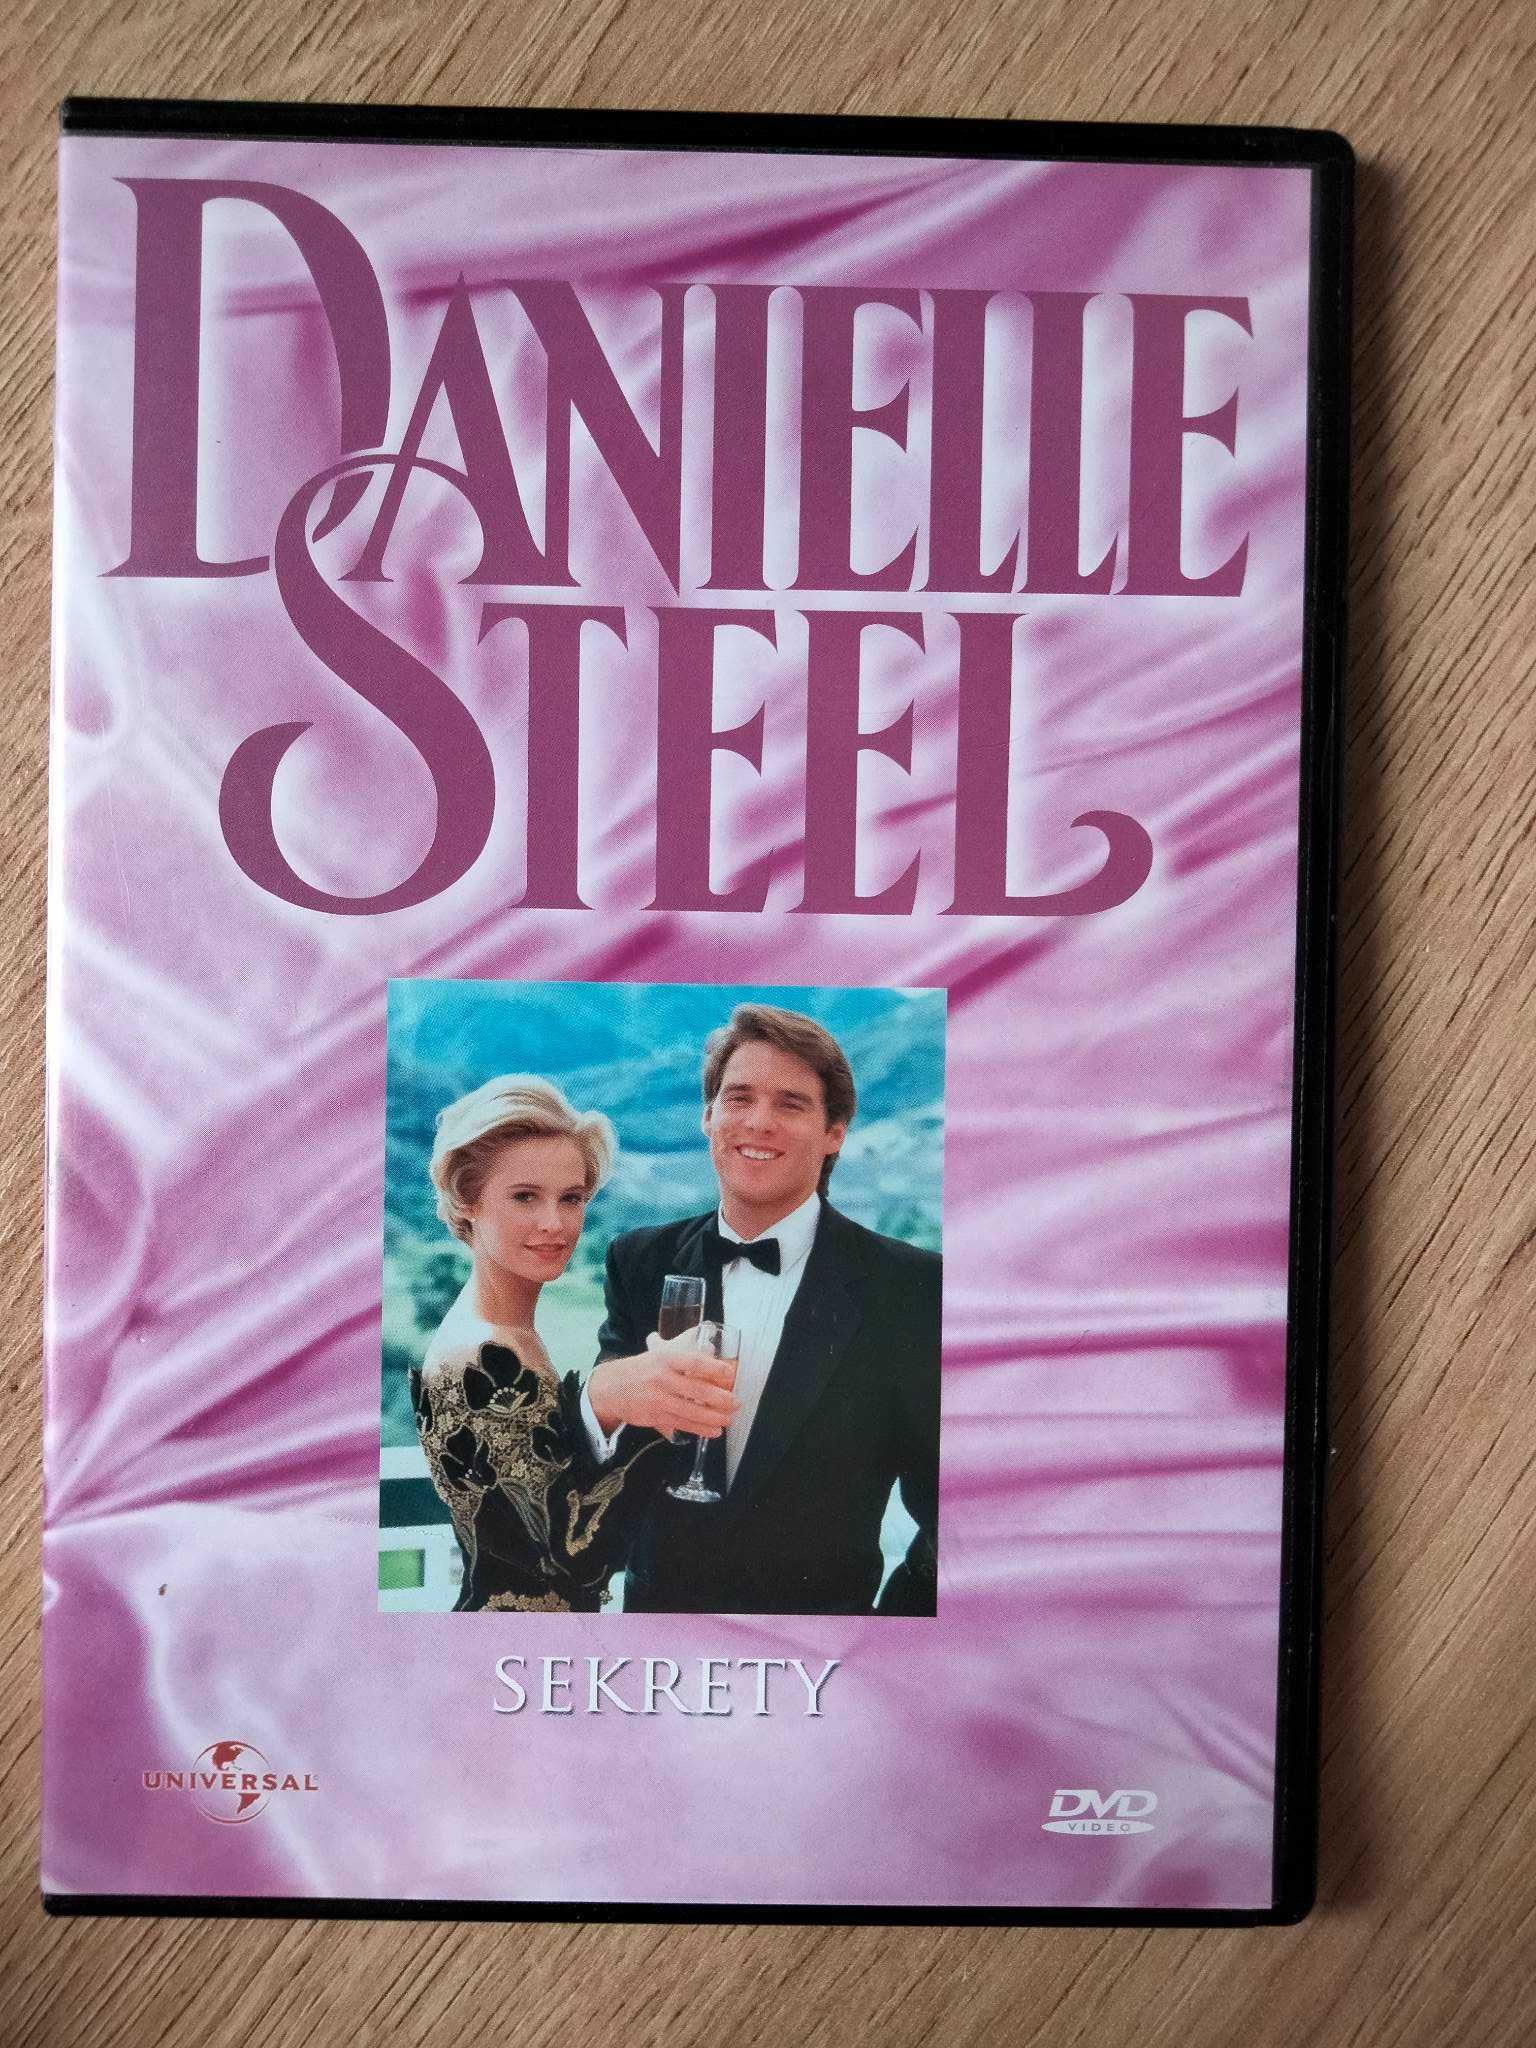 "Sekrety" DVD (Danielle Steel)